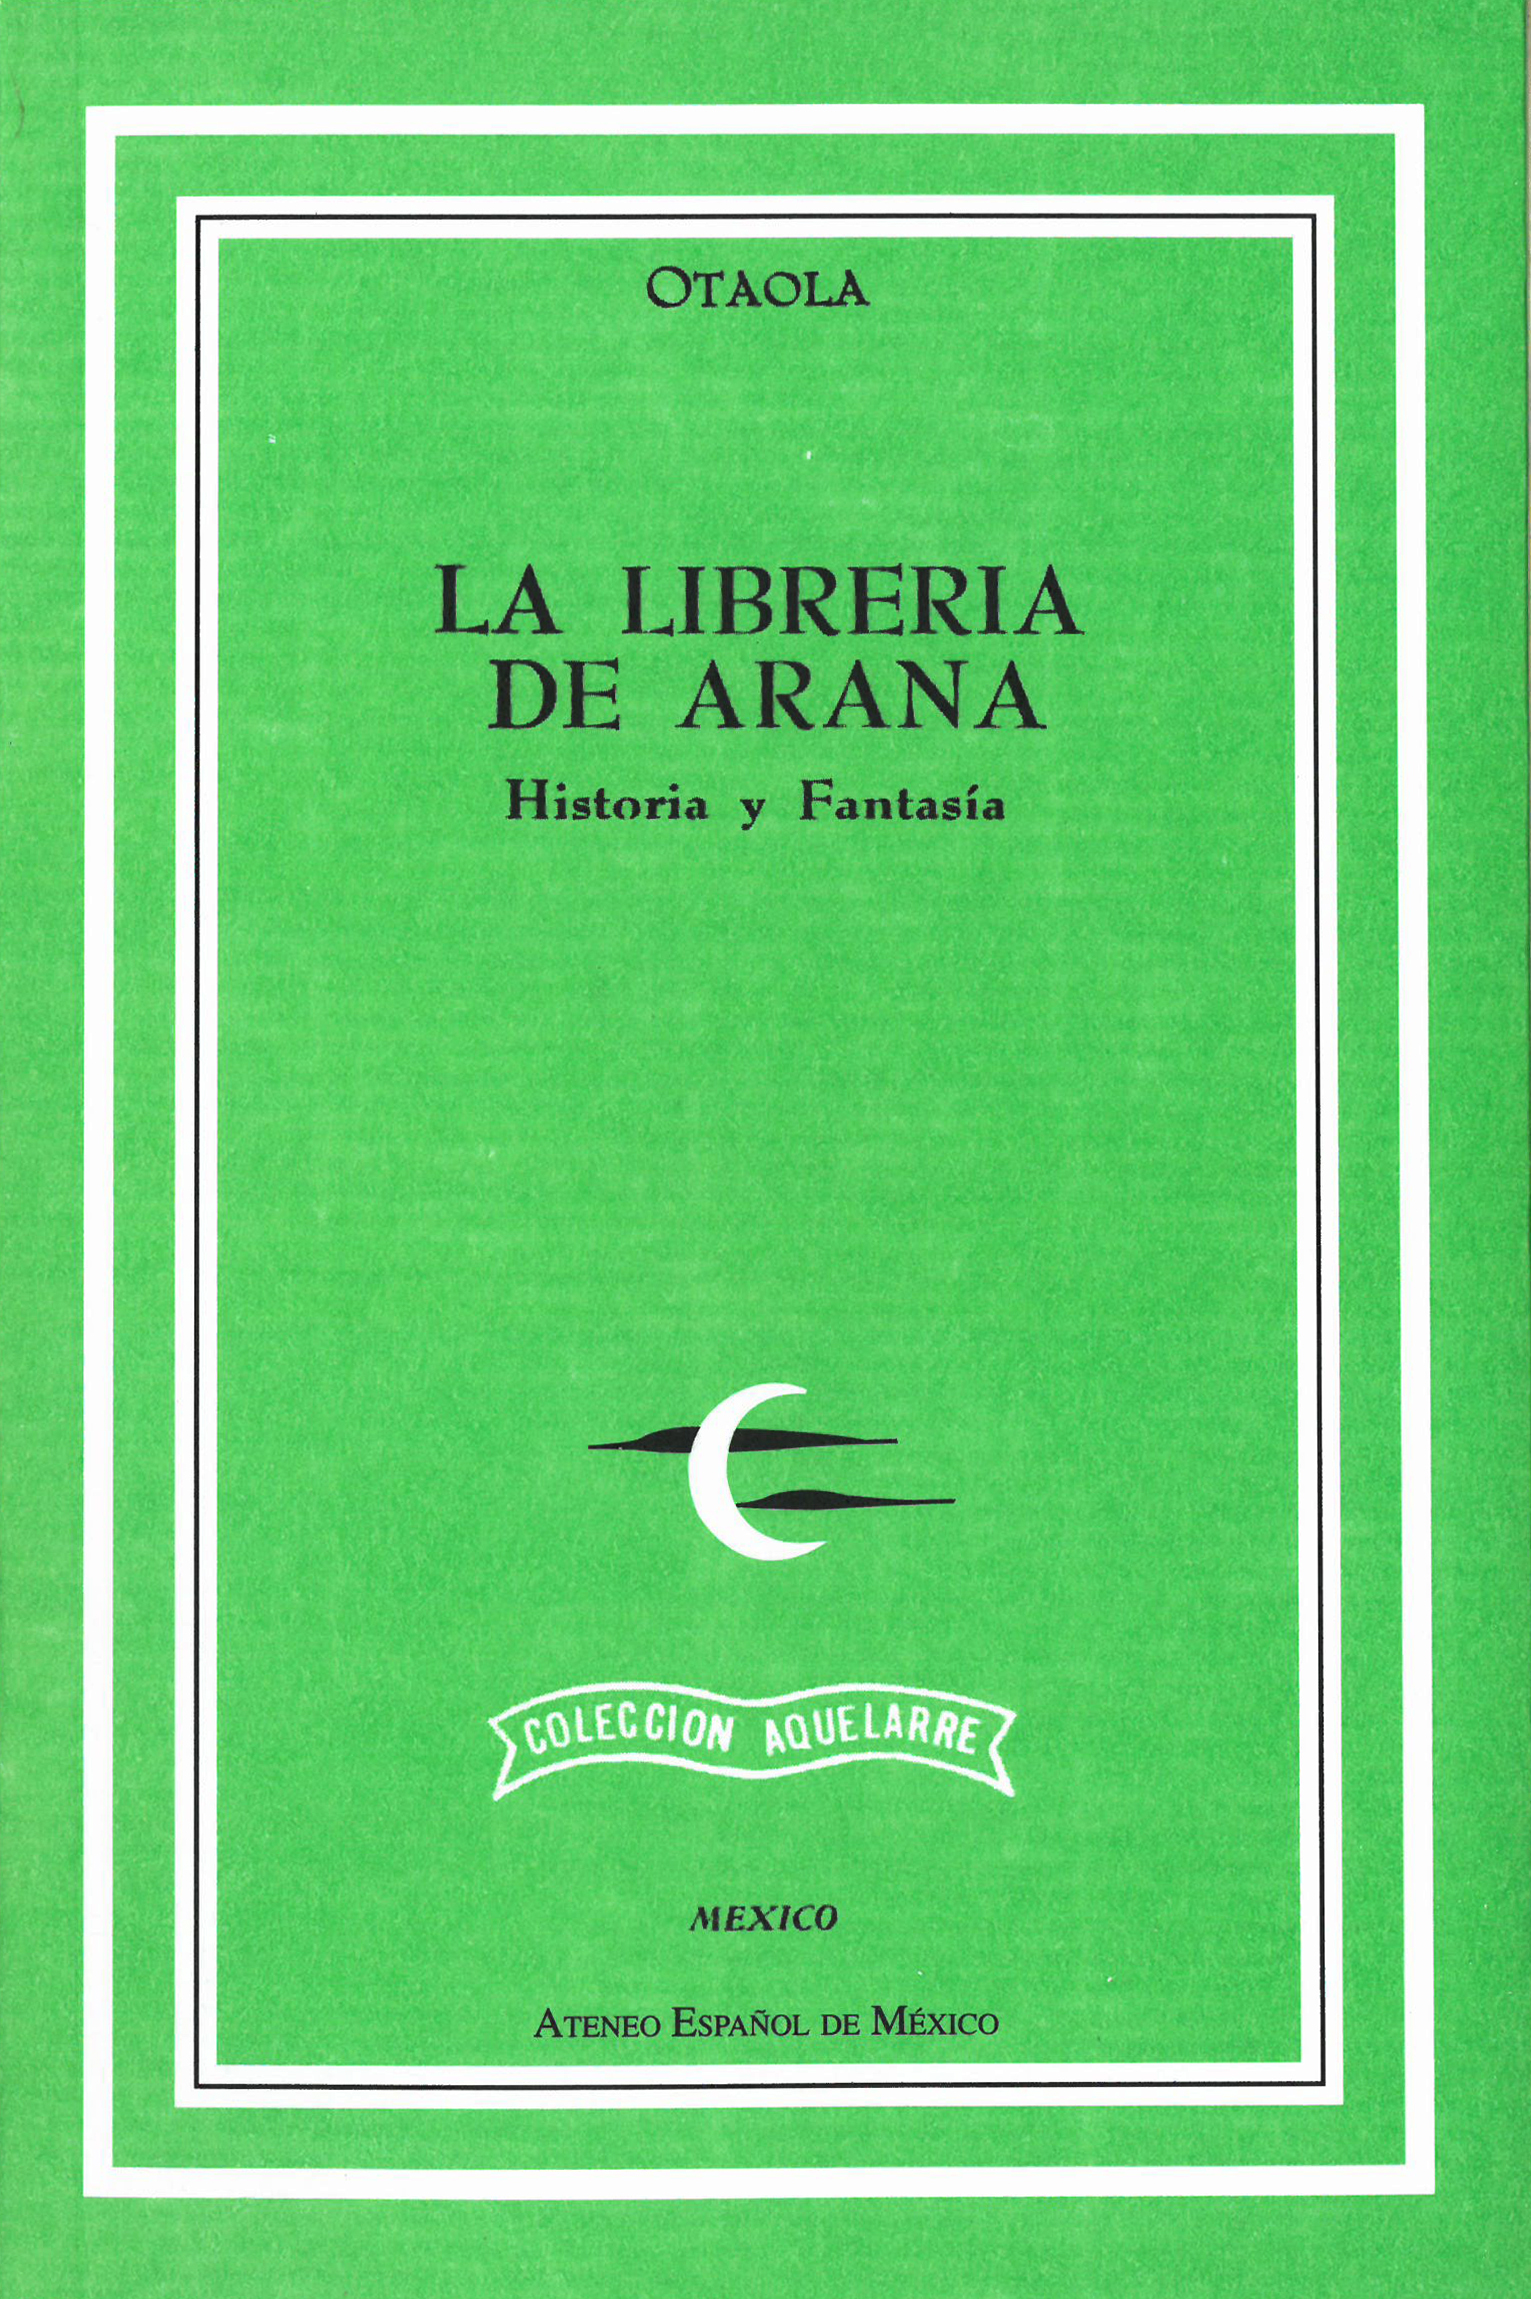 La librería de Arana. Historia y Fantasía main image